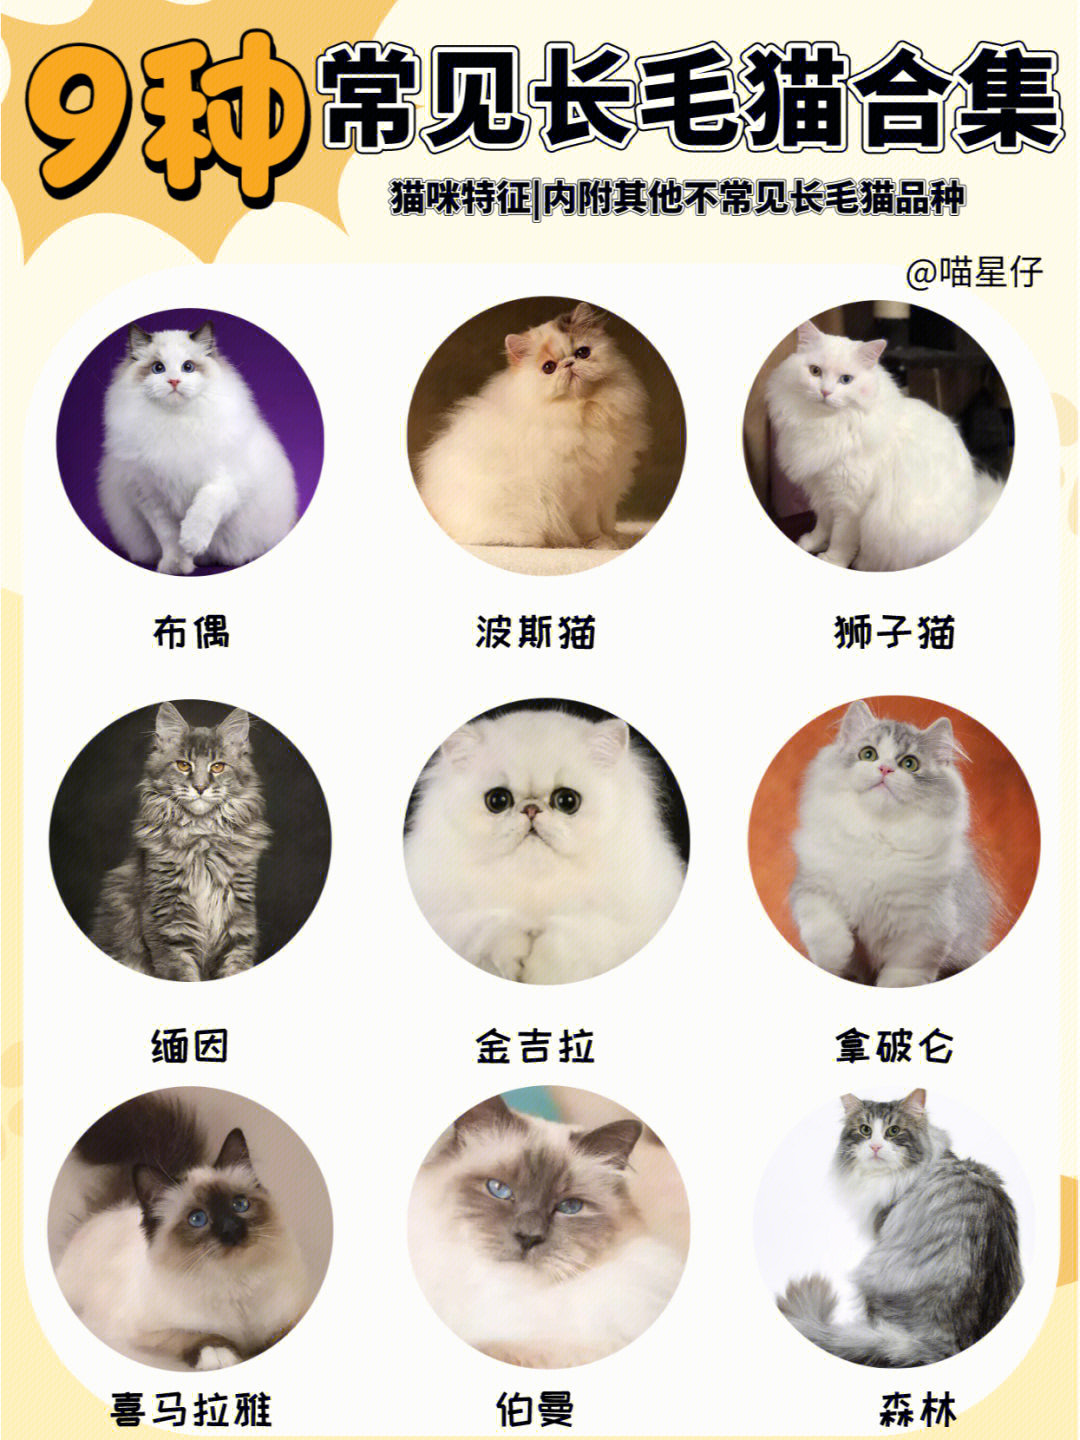 20种长毛猫的品种存在许多长毛猫的品种